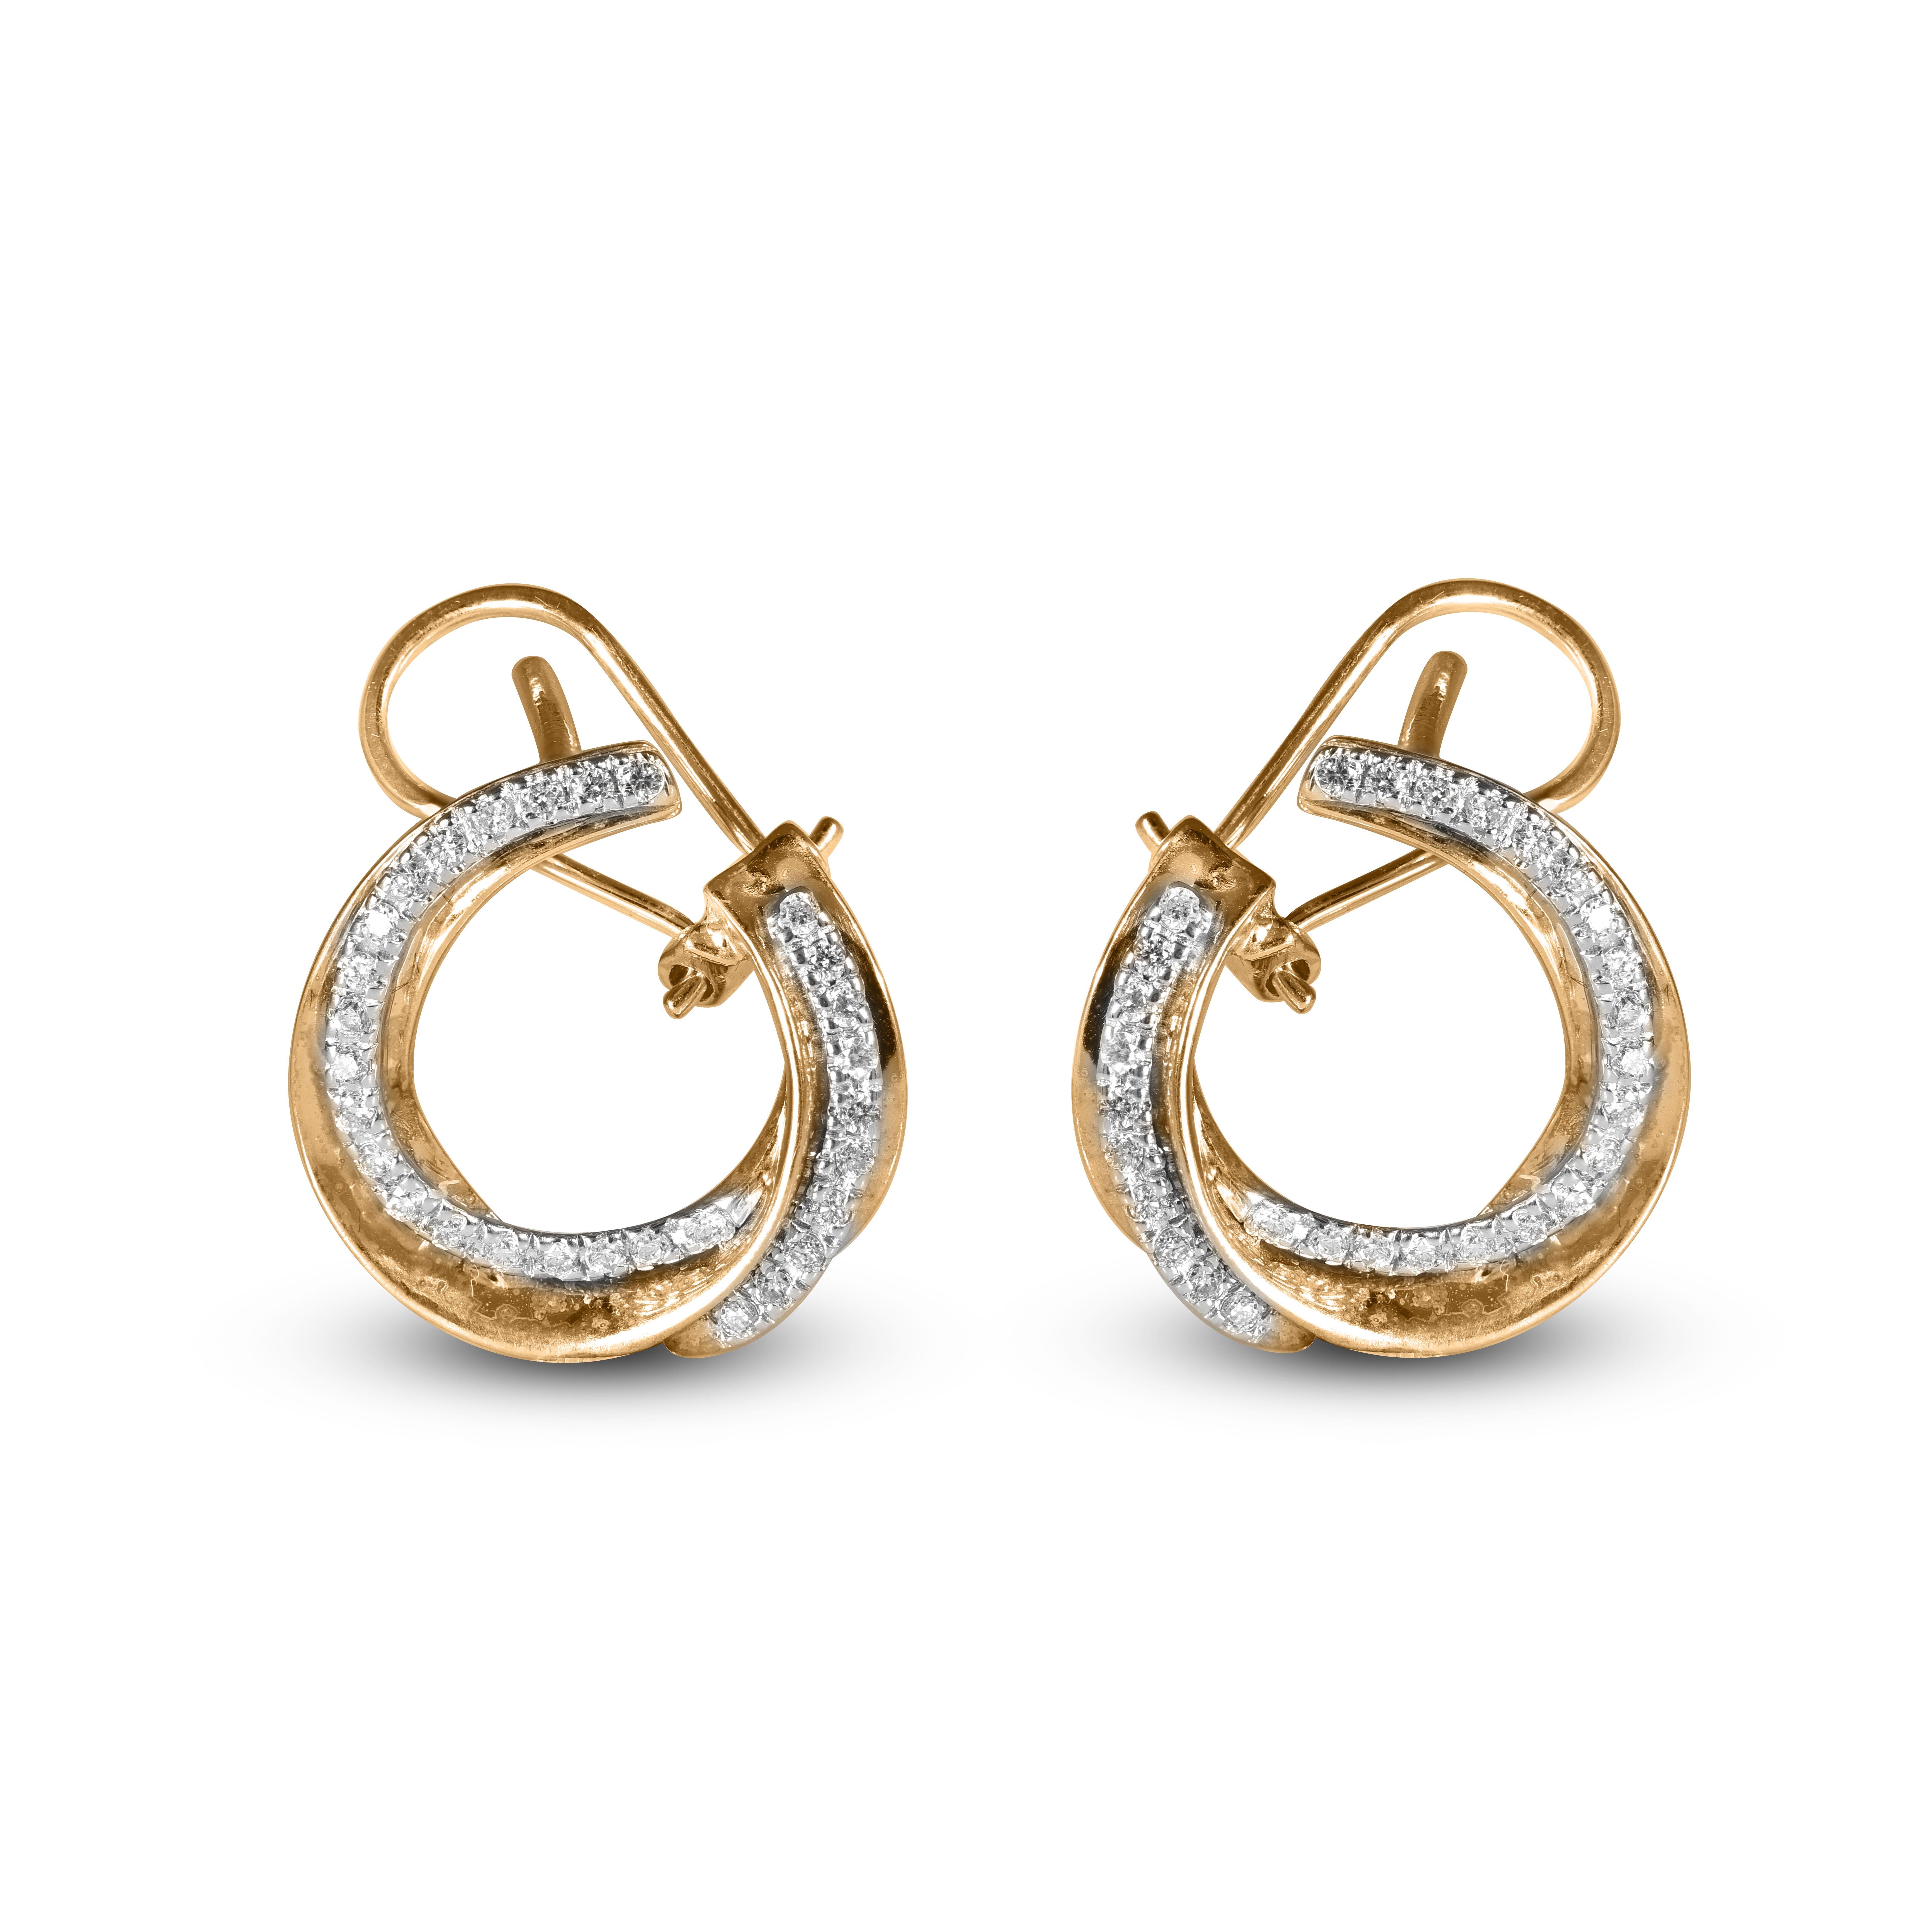 Diese exquisiten Design-Diamant-Bogen-Ohrringe bieten eine Schönheit, die nur mit ihrer eigenen vergleichbar ist. Diese Ohrringe sind mit 58 runden Diamanten in Zackenfassung besetzt und aus 18 Karat Gelbgold gefertigt. Diese zeitlosen Reif-Ohrringe